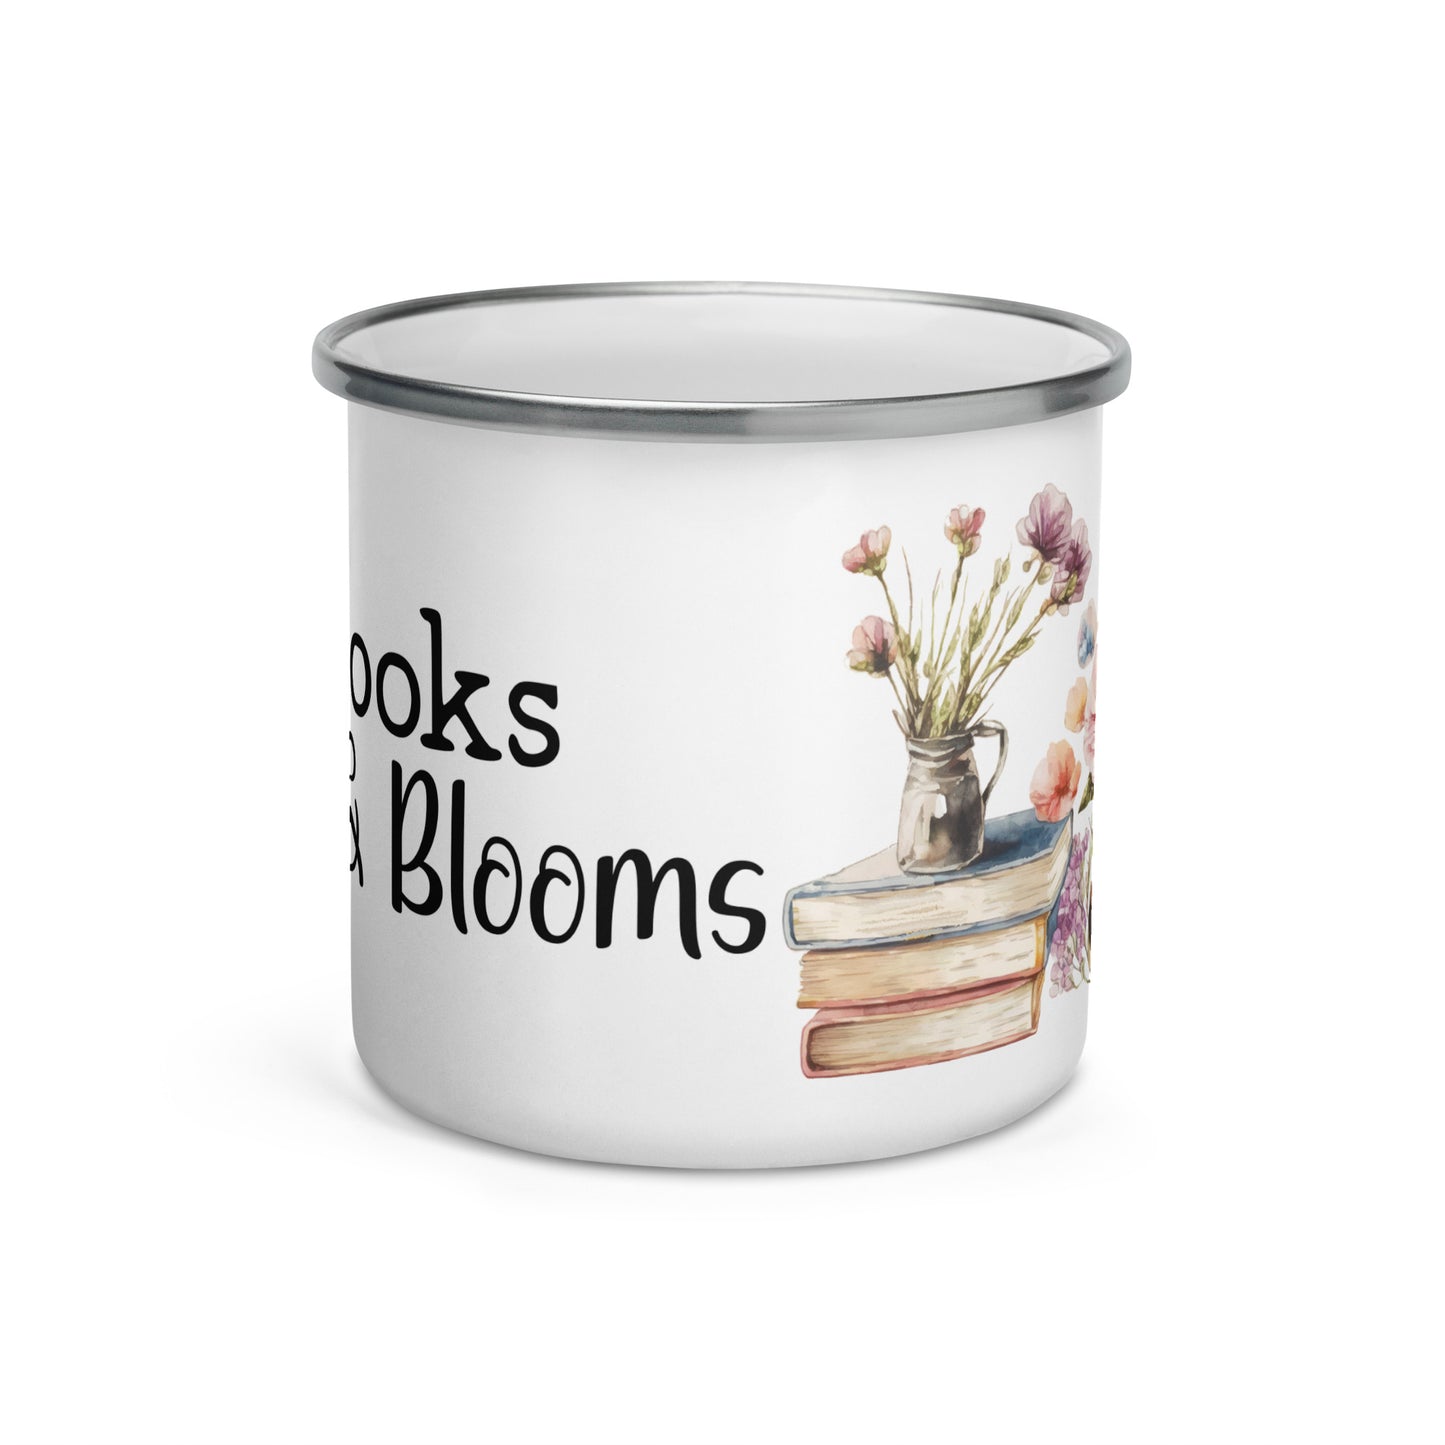 Books & Blooms Enamel Mug